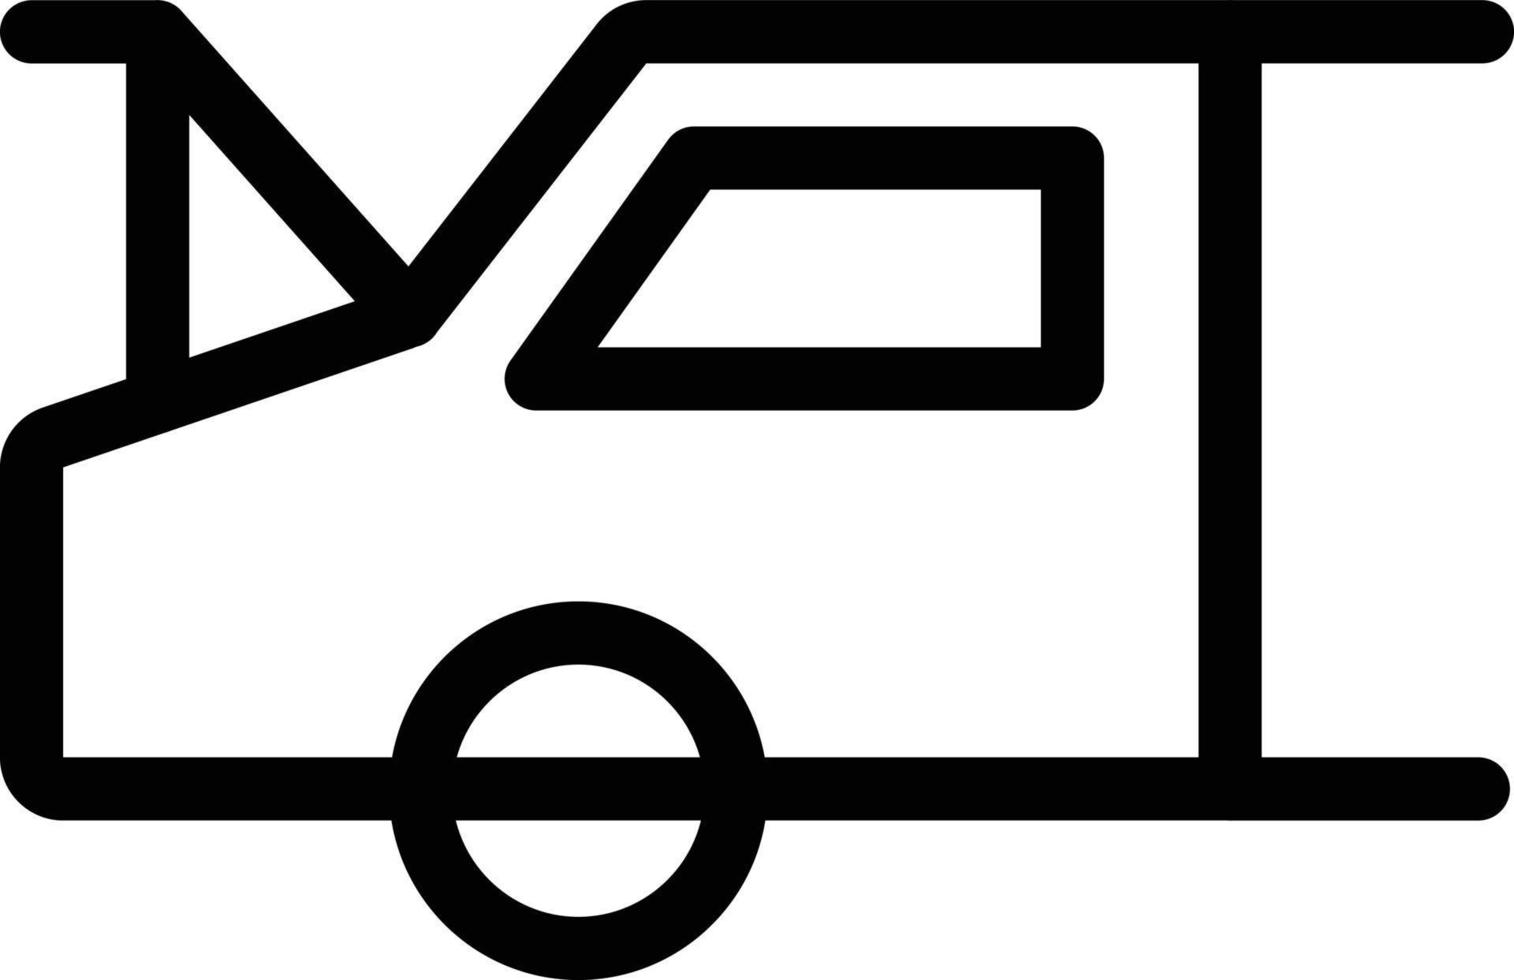 ilustração em vetor capô do carro em símbolos de qualidade background.premium. ícones vetoriais para conceito e design gráfico.